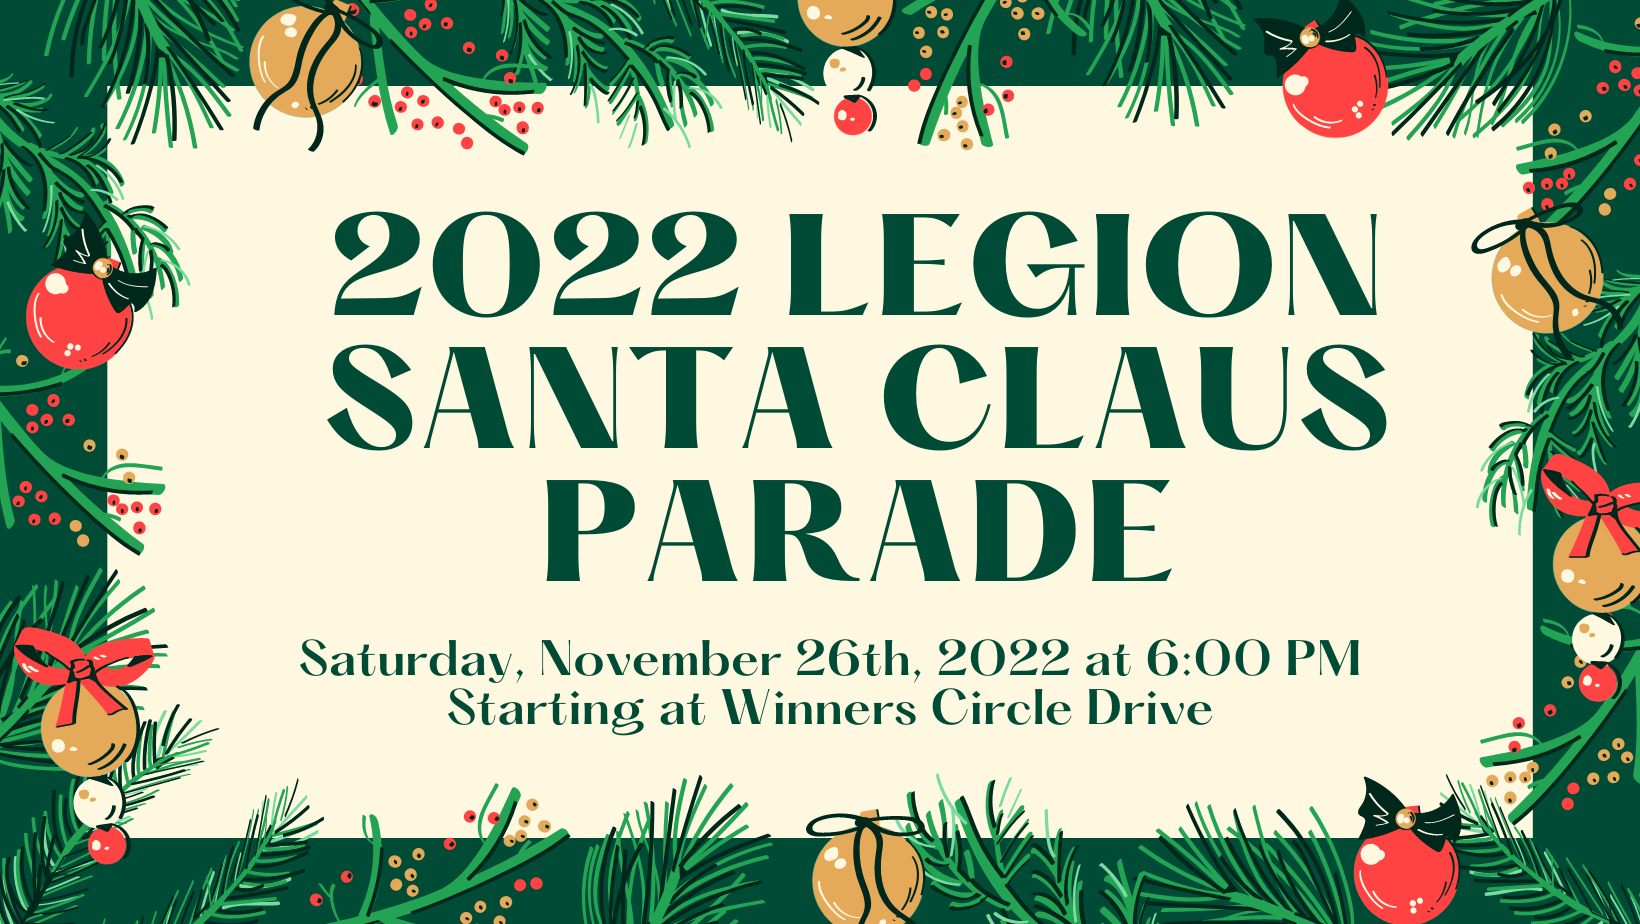 2022 Legion Santa Claus Parade - Saturday, November 26th, 2022 at 6:00 PM - Starting on Winners Circle Drive